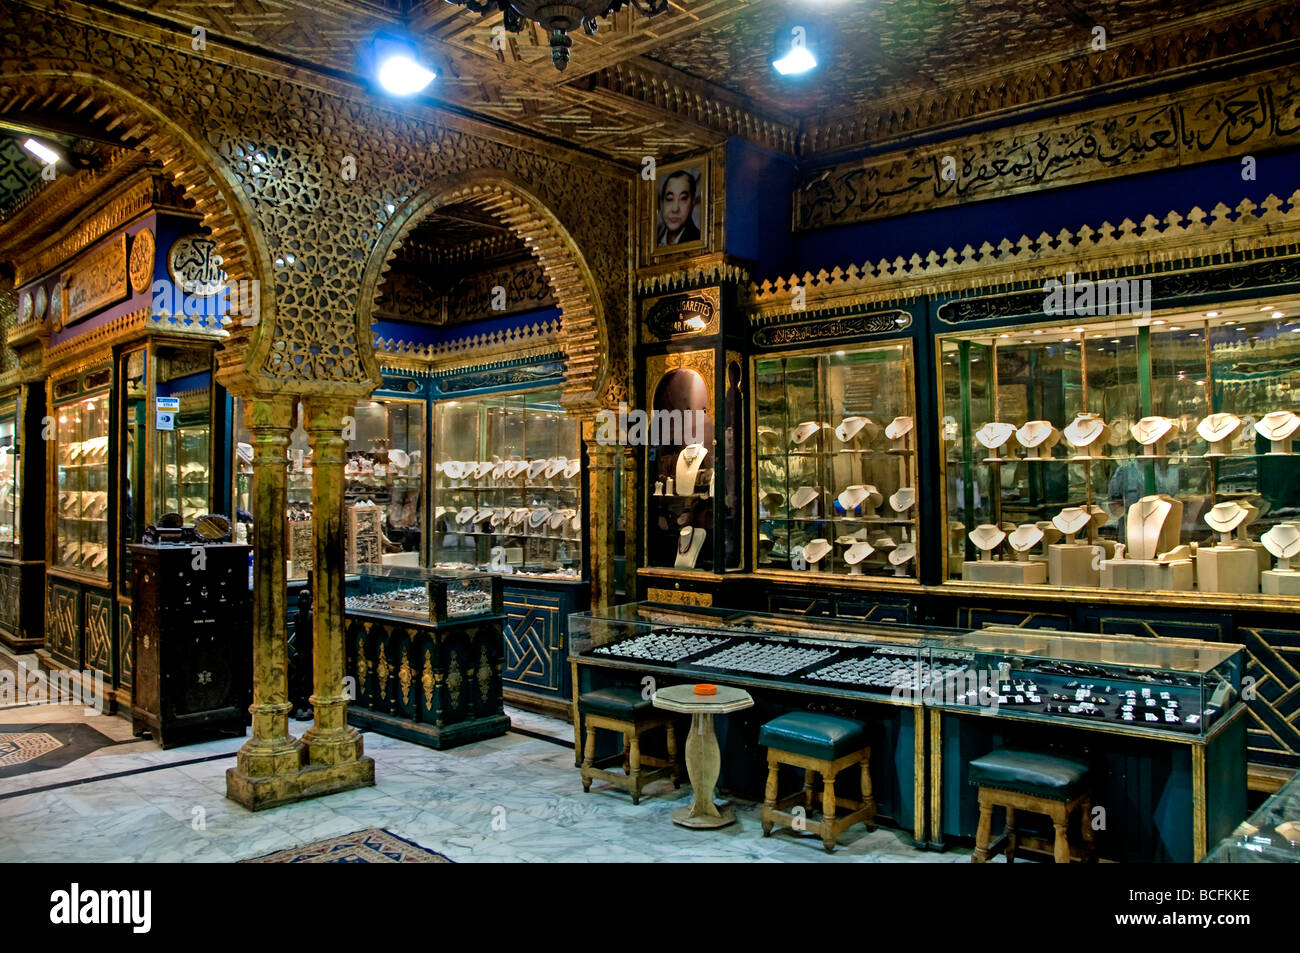 Khan el Khalili El Cairo Egipto Bazar joyero oro Foto de stock